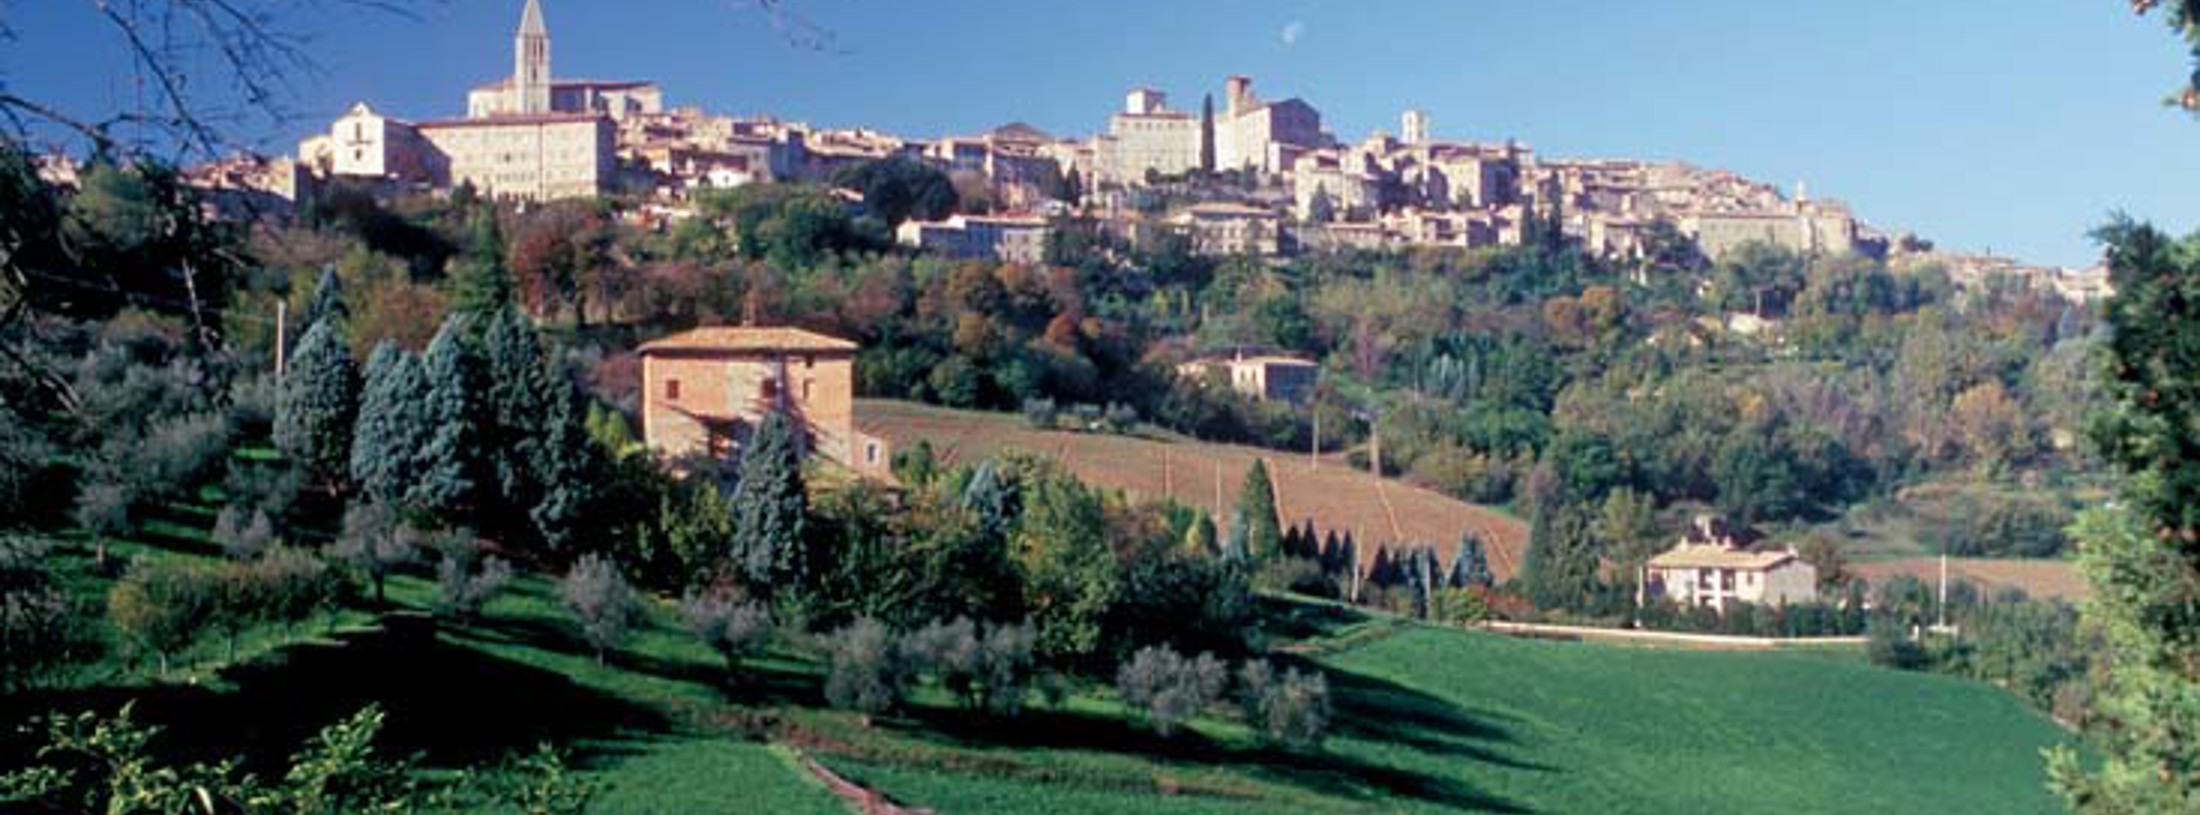 Perugia area